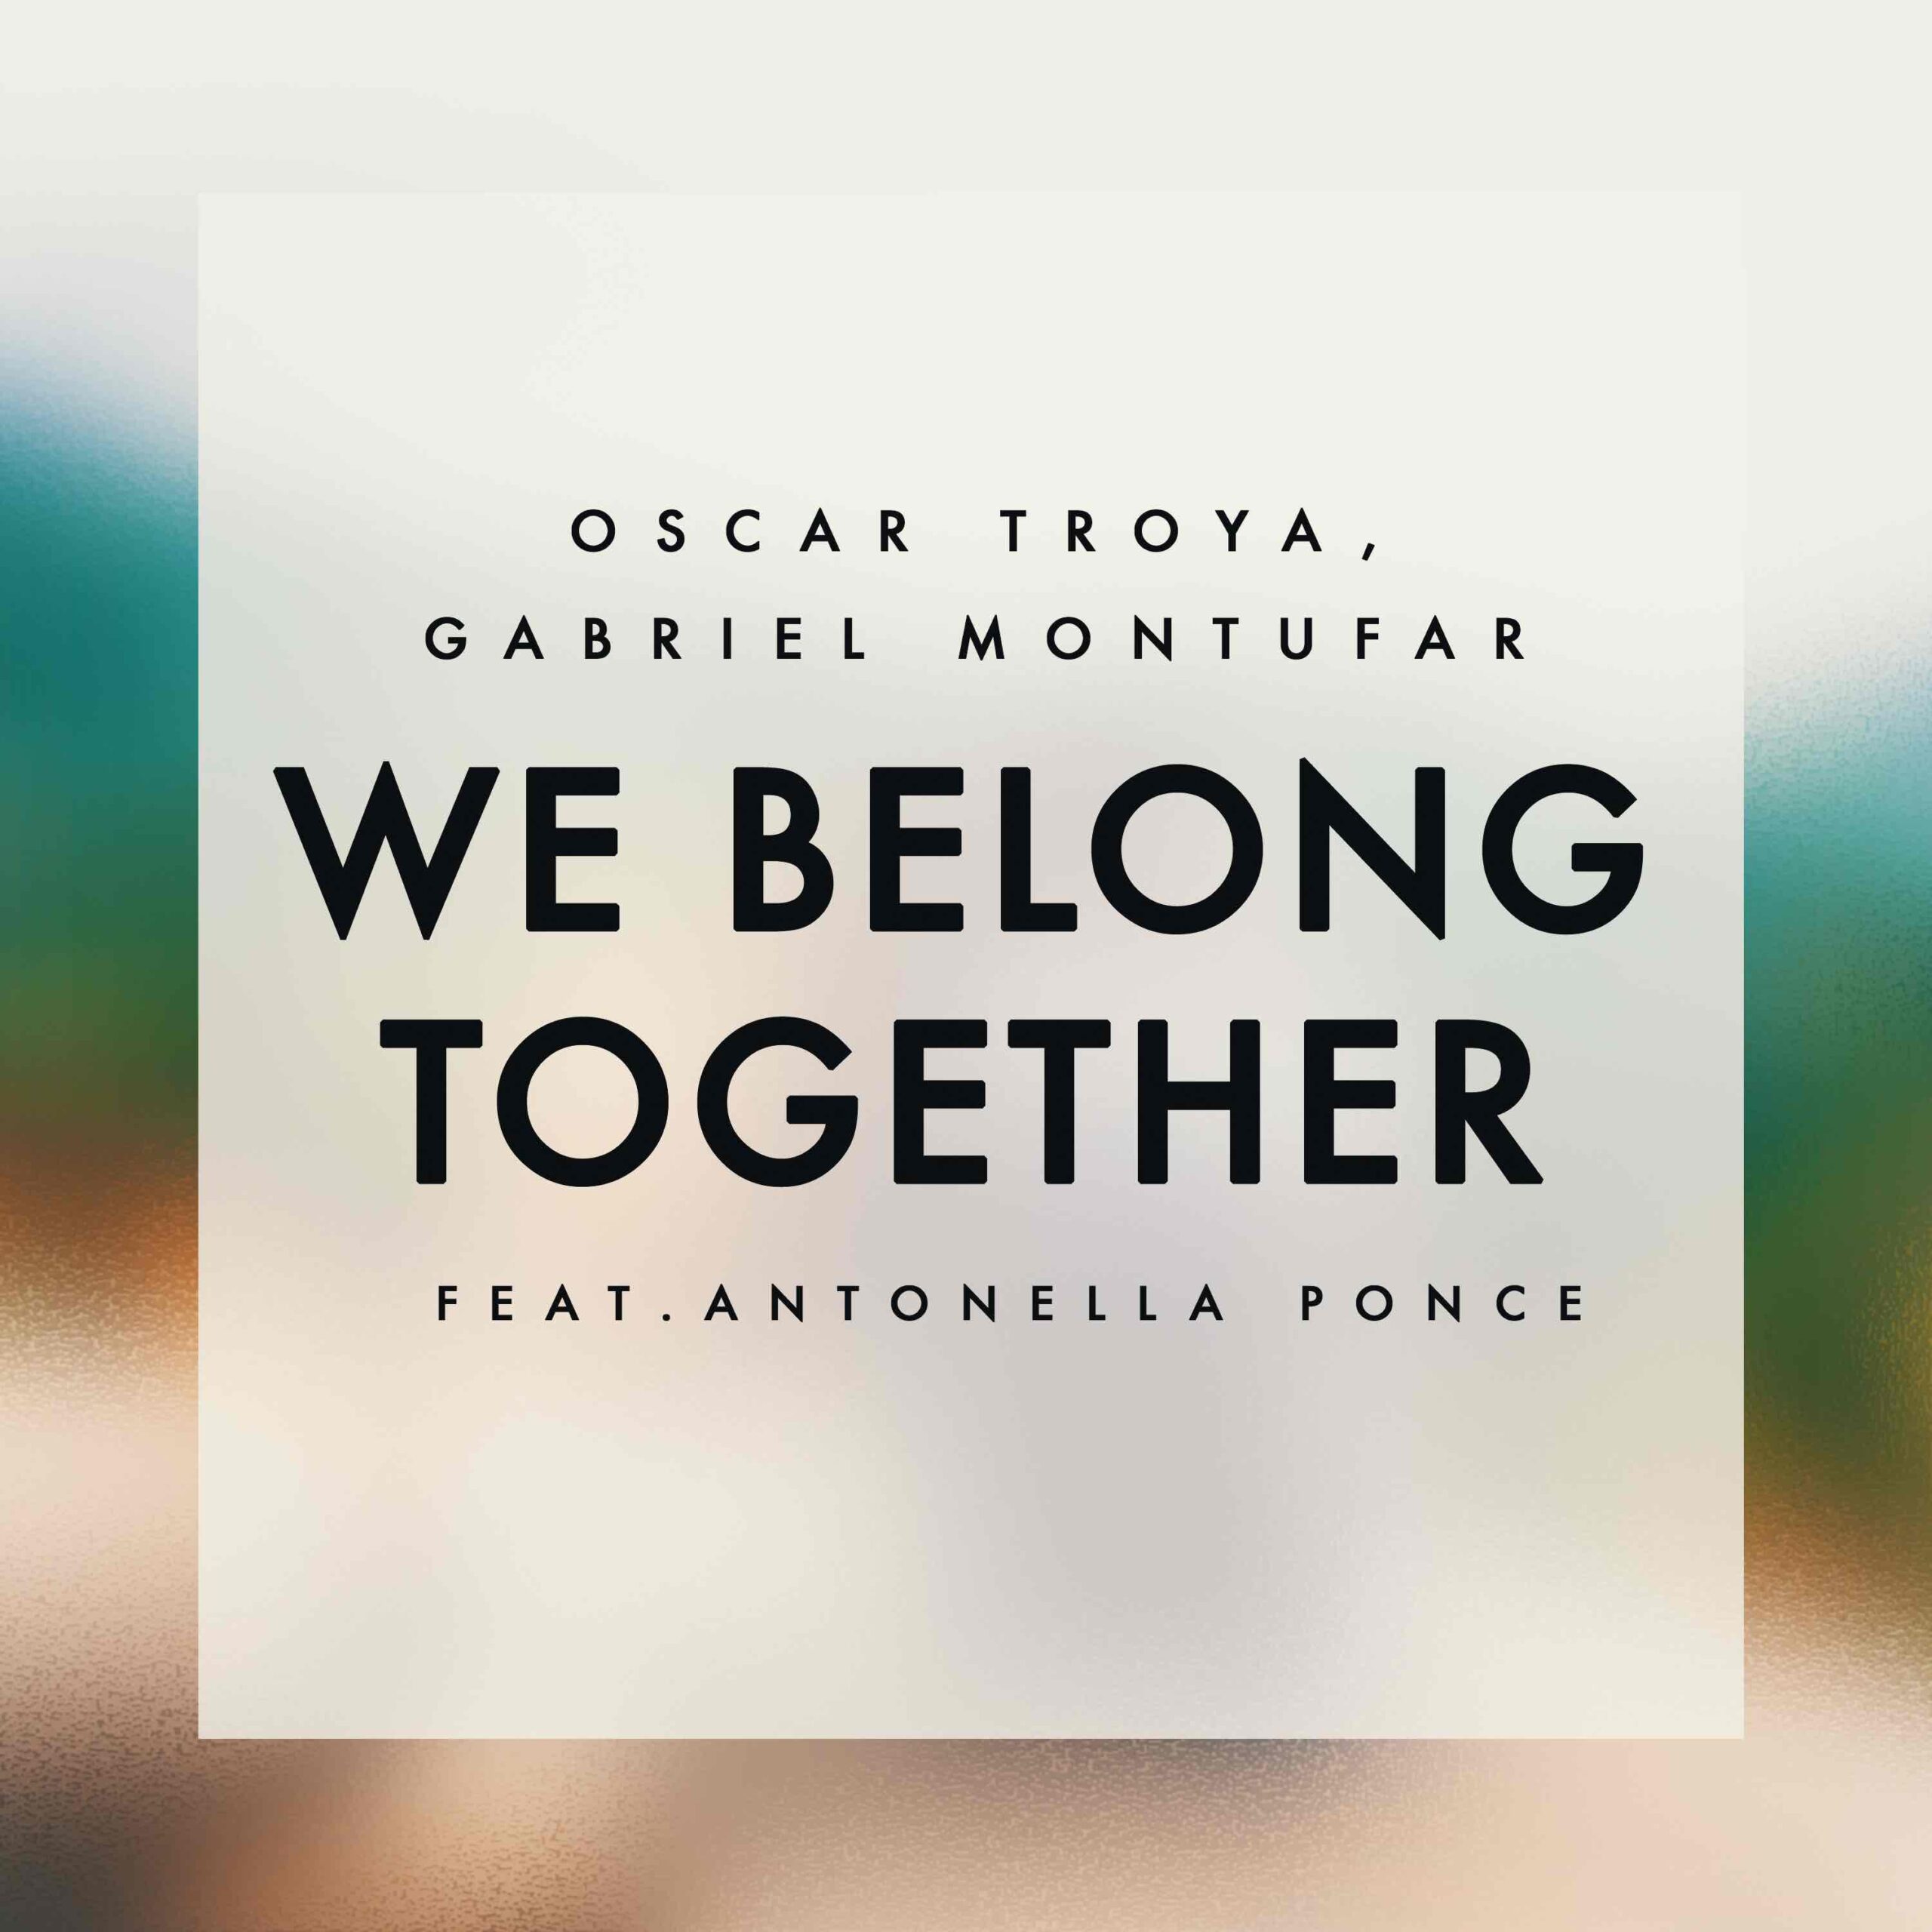 Belong together speed up. We belong. We belong together. Carey we belong together. We belong together 2018.